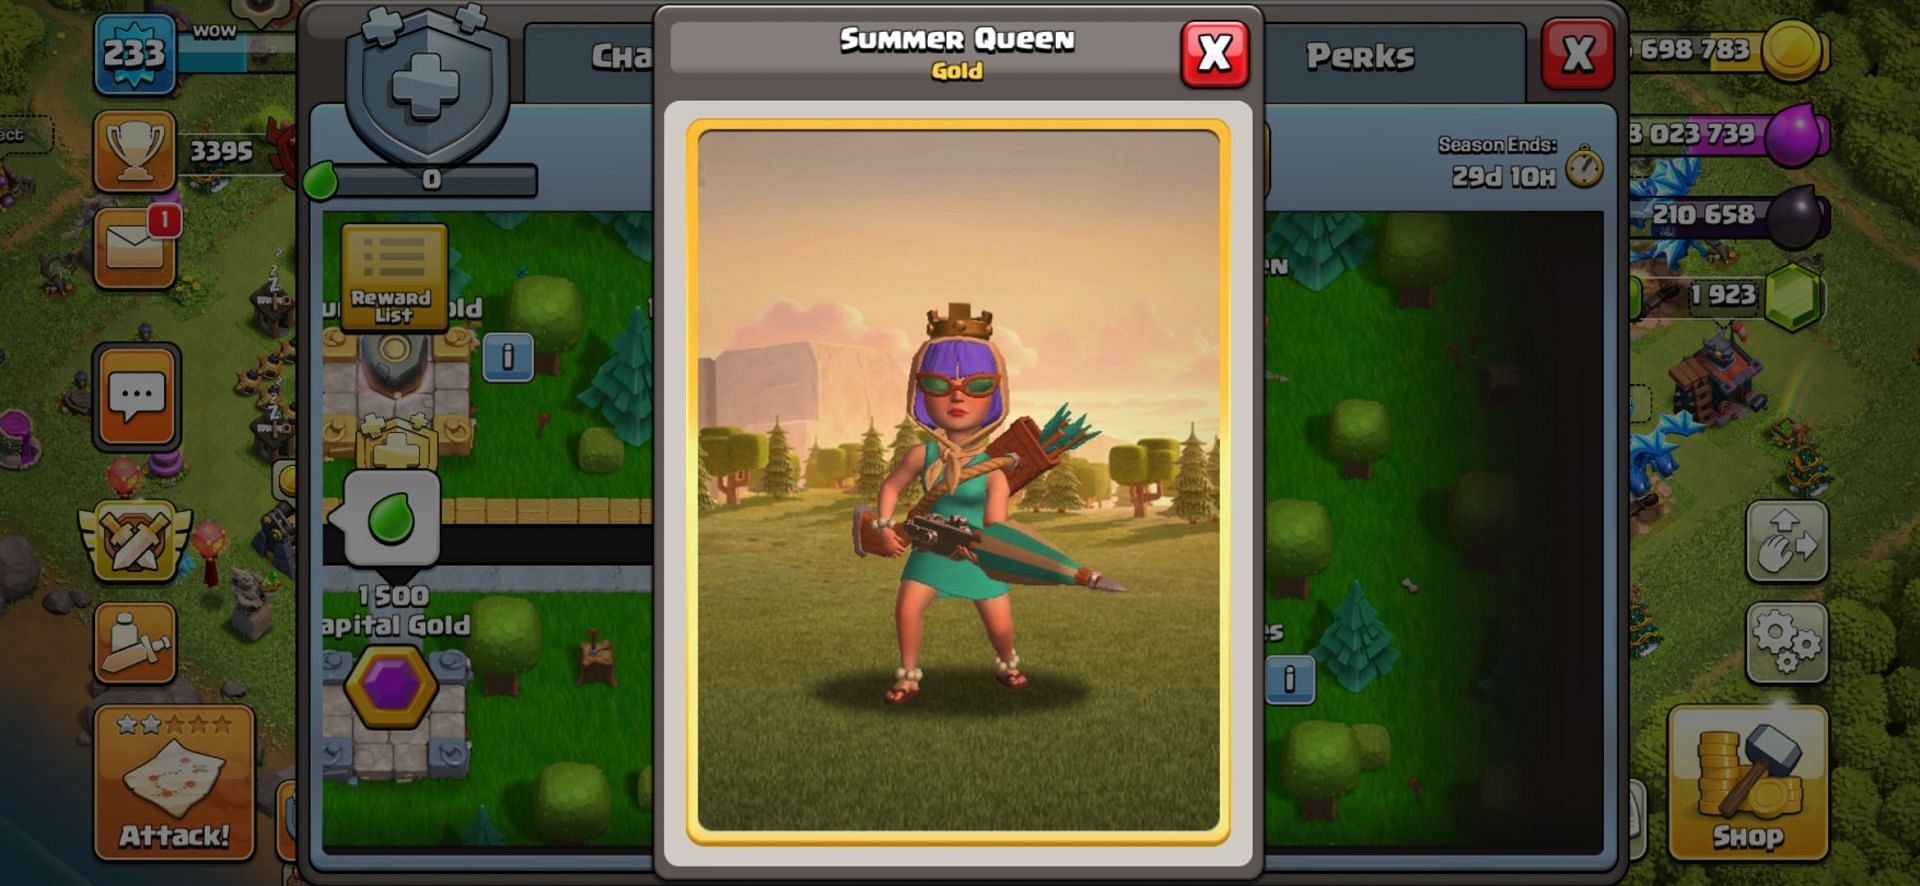 Summer Queen hero skin (Image via Sportskeeda)